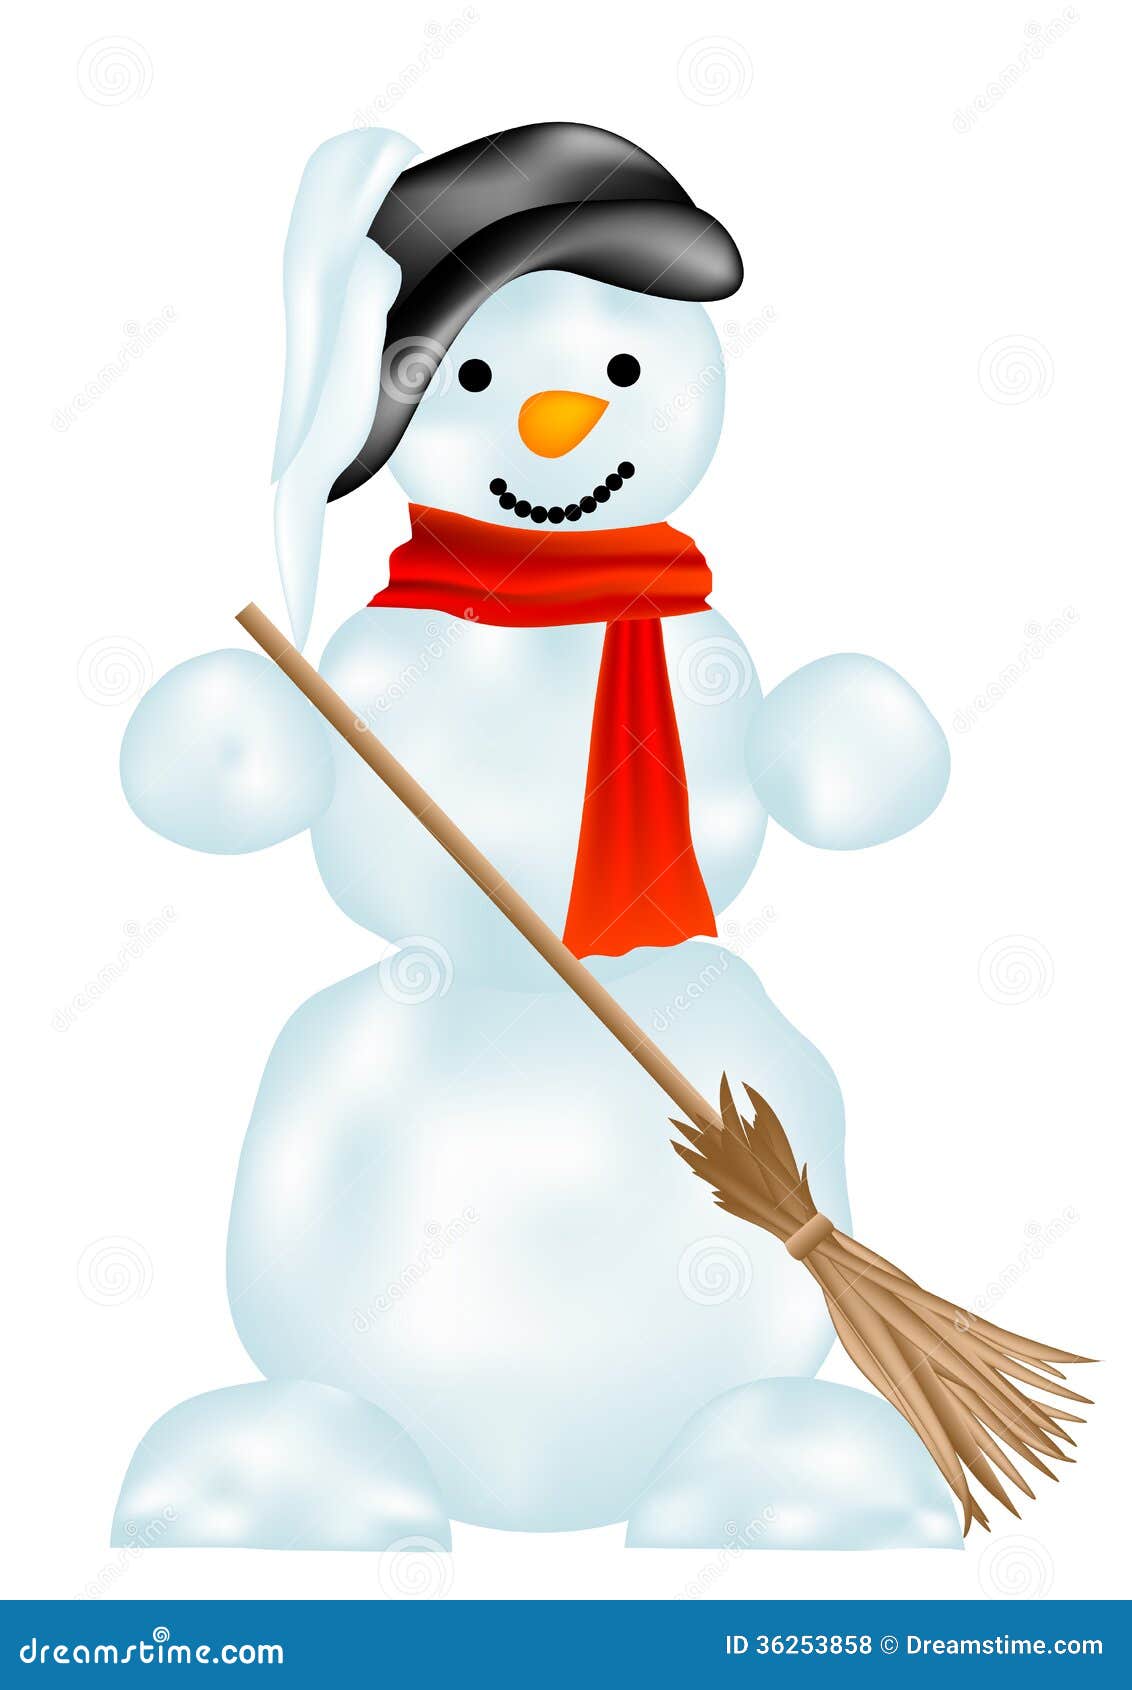 Snowman stock vector. Illustration of frozen, illustration - 36253858